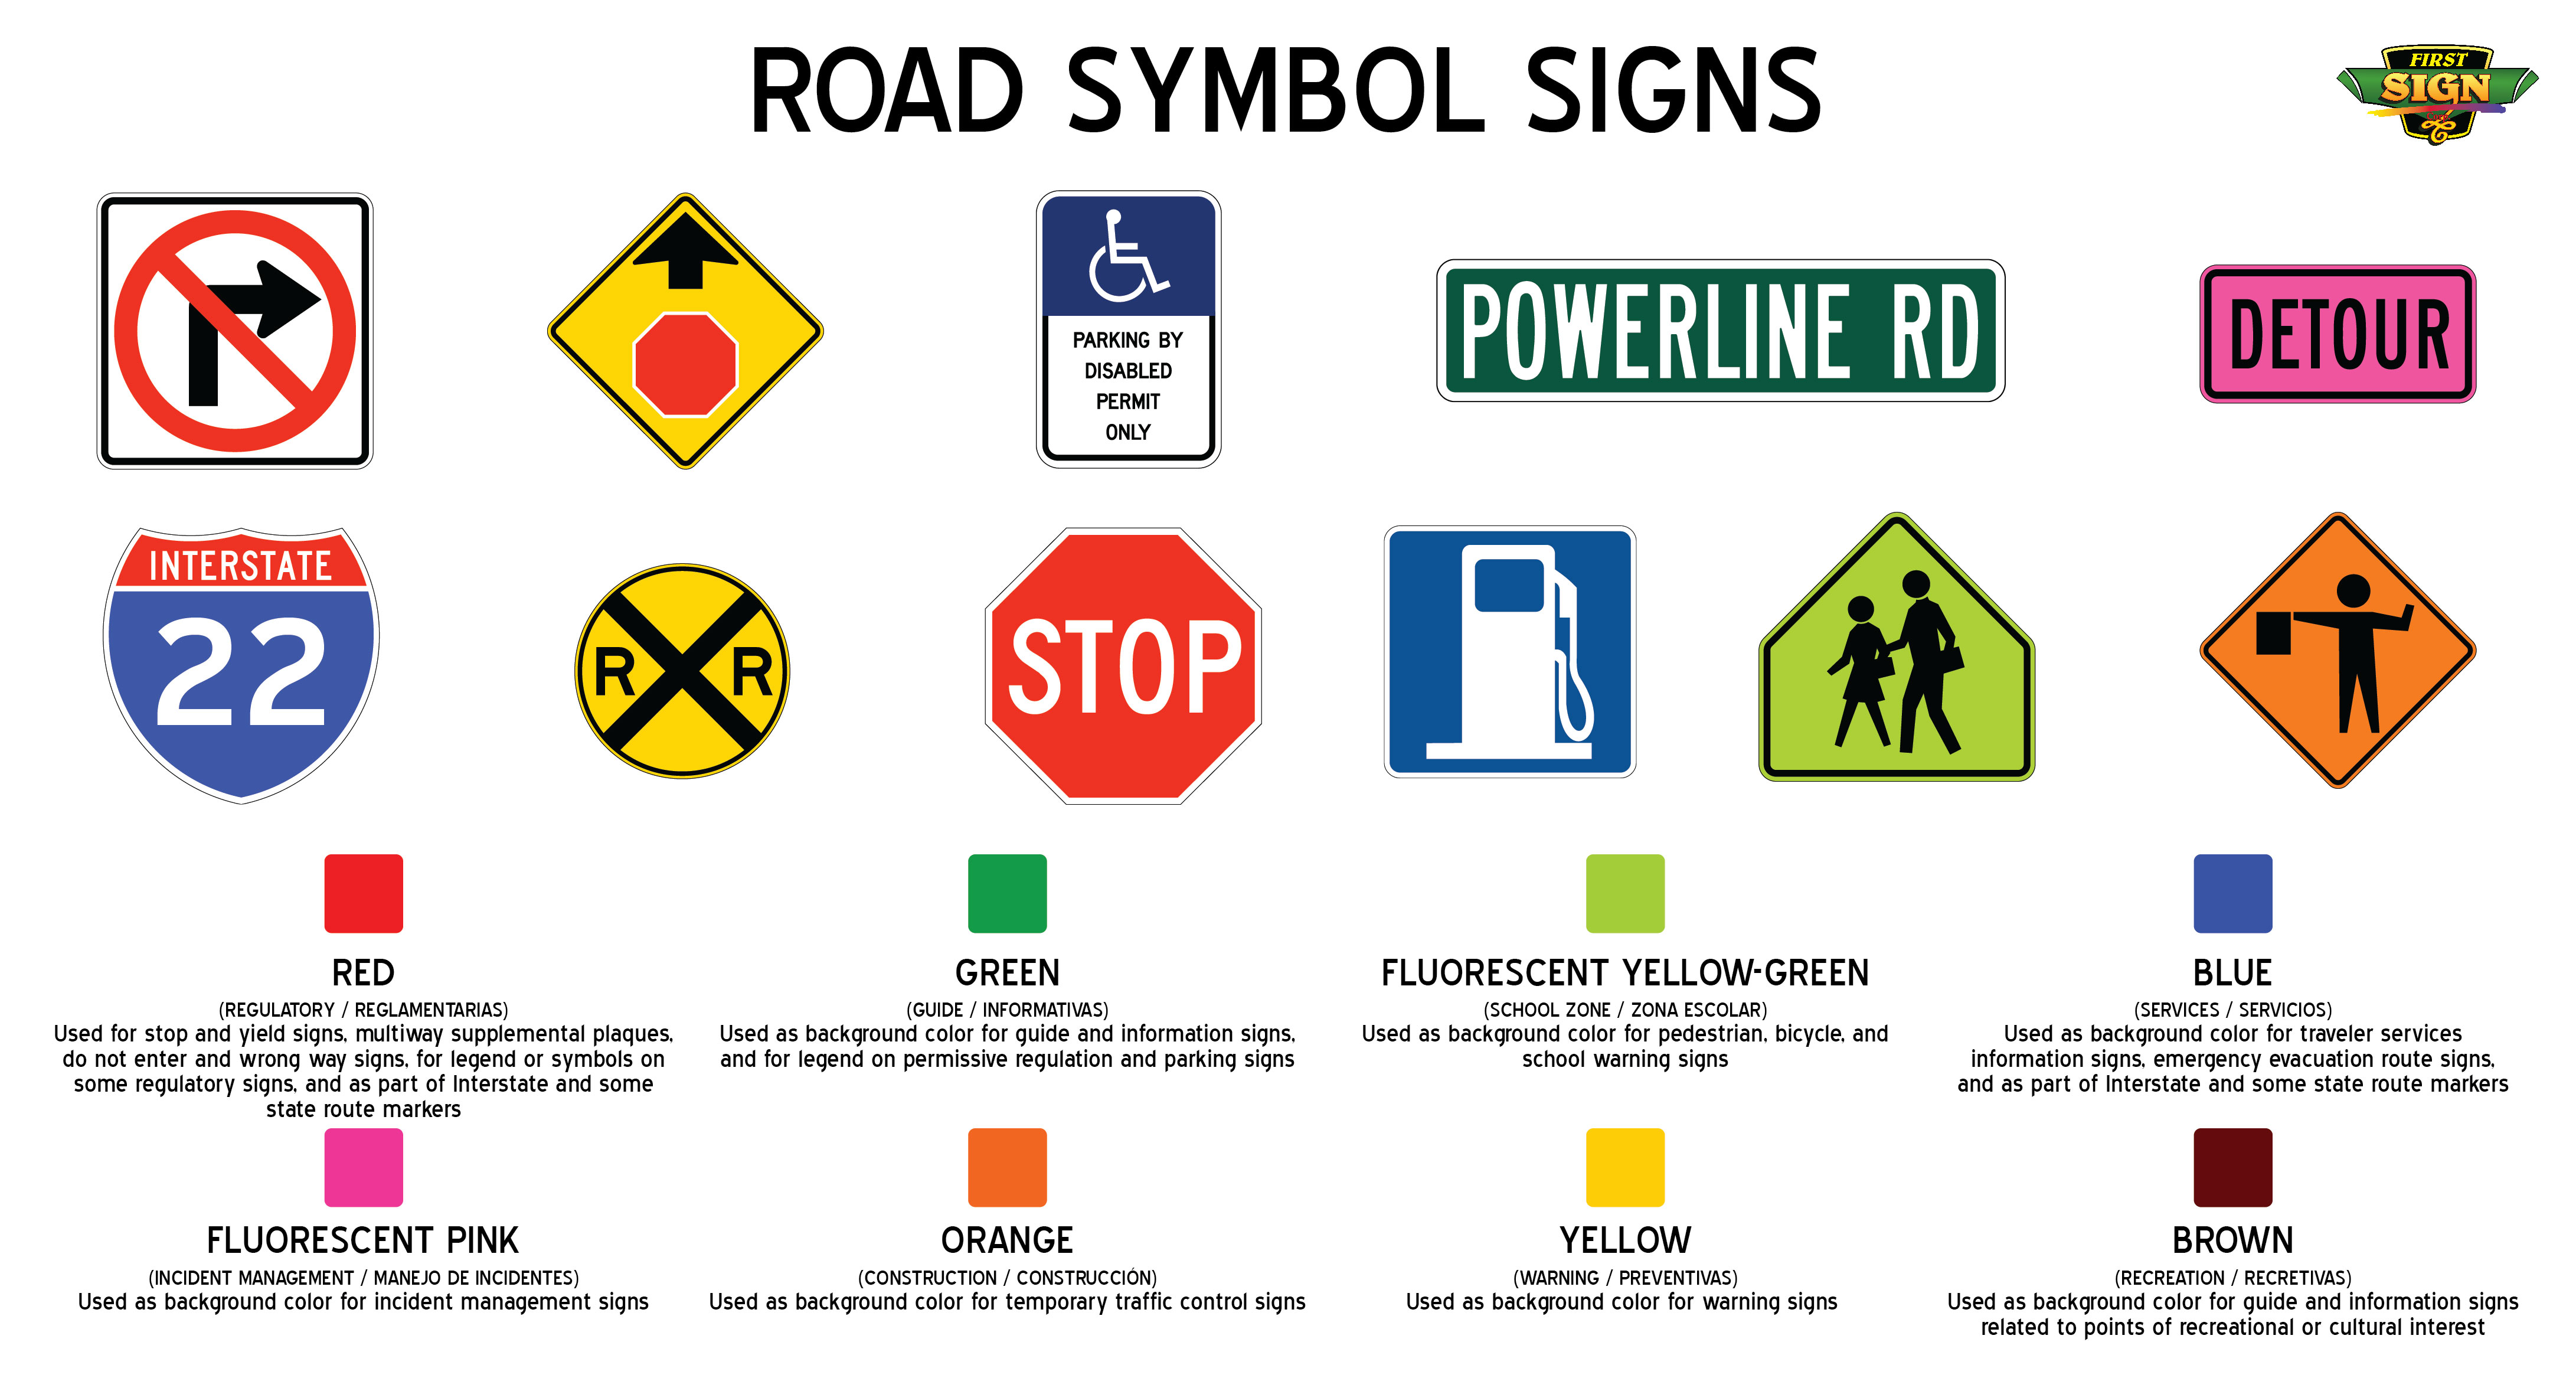 Chuyển động và hướng di chuyển của xe được chỉ định trong biển báo giao thông quy định R3 - R4 màu đen. Hãy xem hình ảnh liên quan để hiểu rõ hơn về các biển báo và lái xe an toàn hơn trên đường phố.